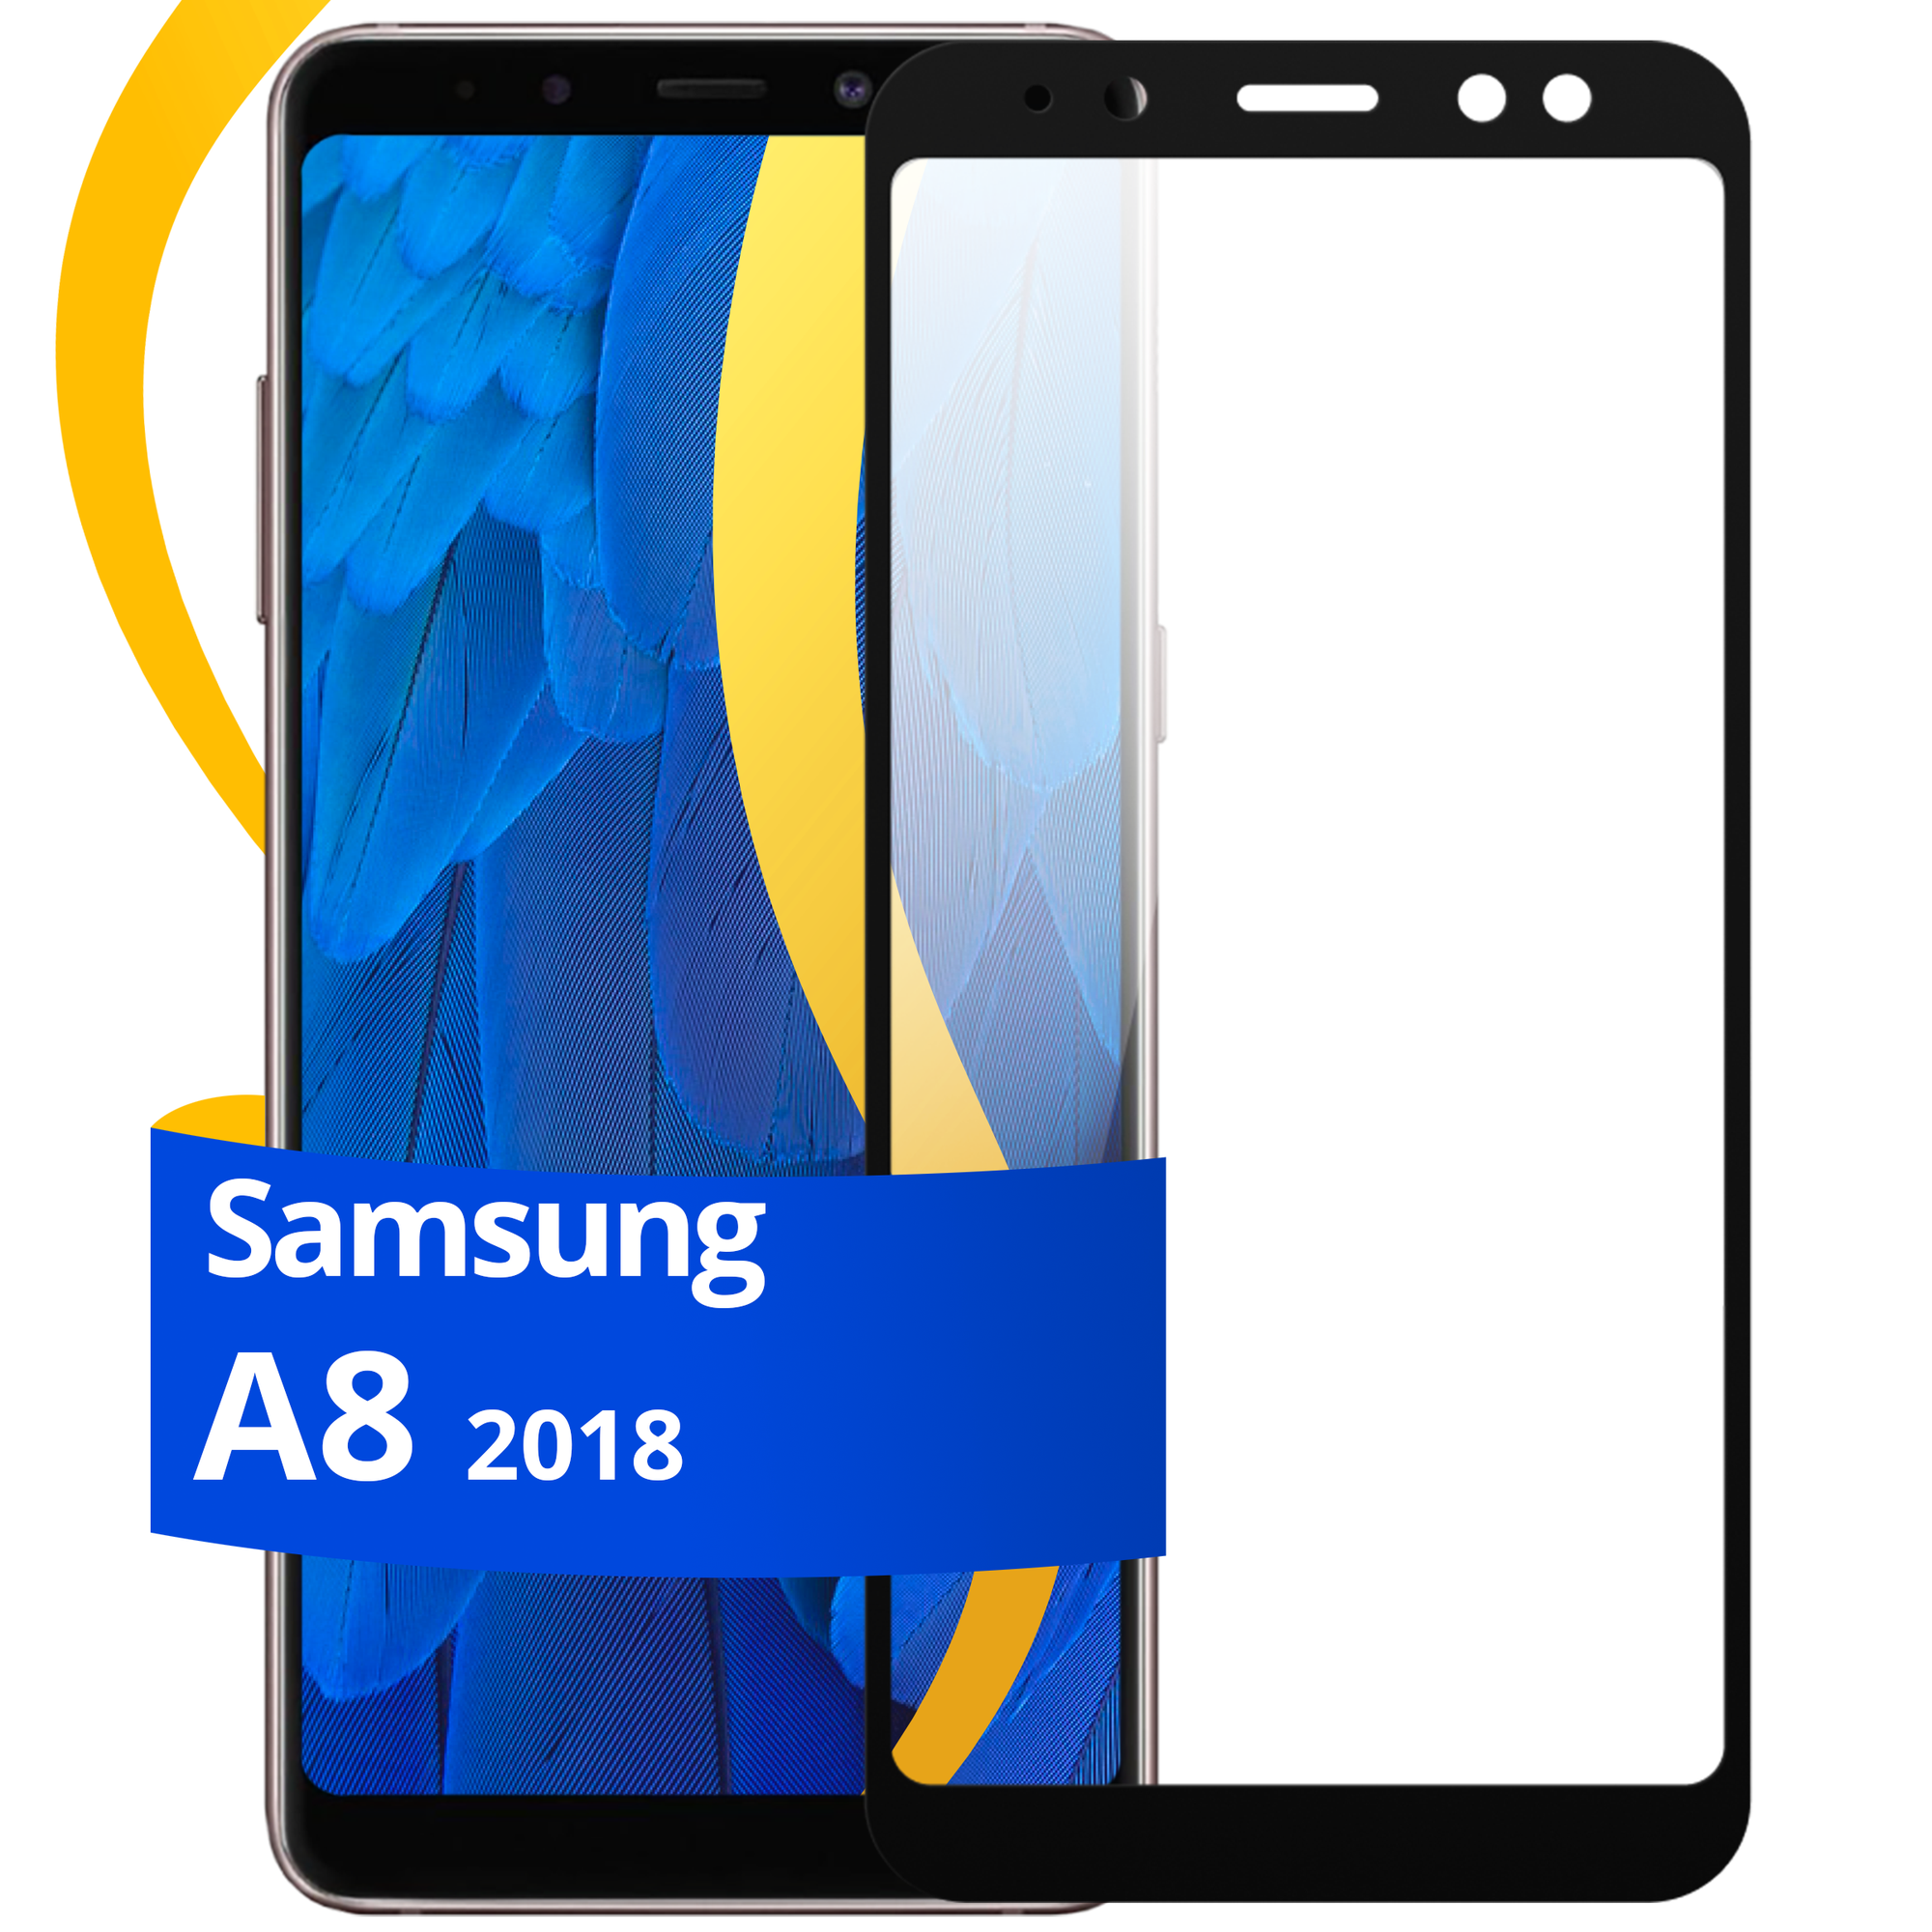 Глянцевое защитное стекло для телефона Samsung Galaxy A8 2018 ( SM-A530F) / Противоударное стекло с олеофобным покрытием на смартфон Самсунг Галакси А8 2018